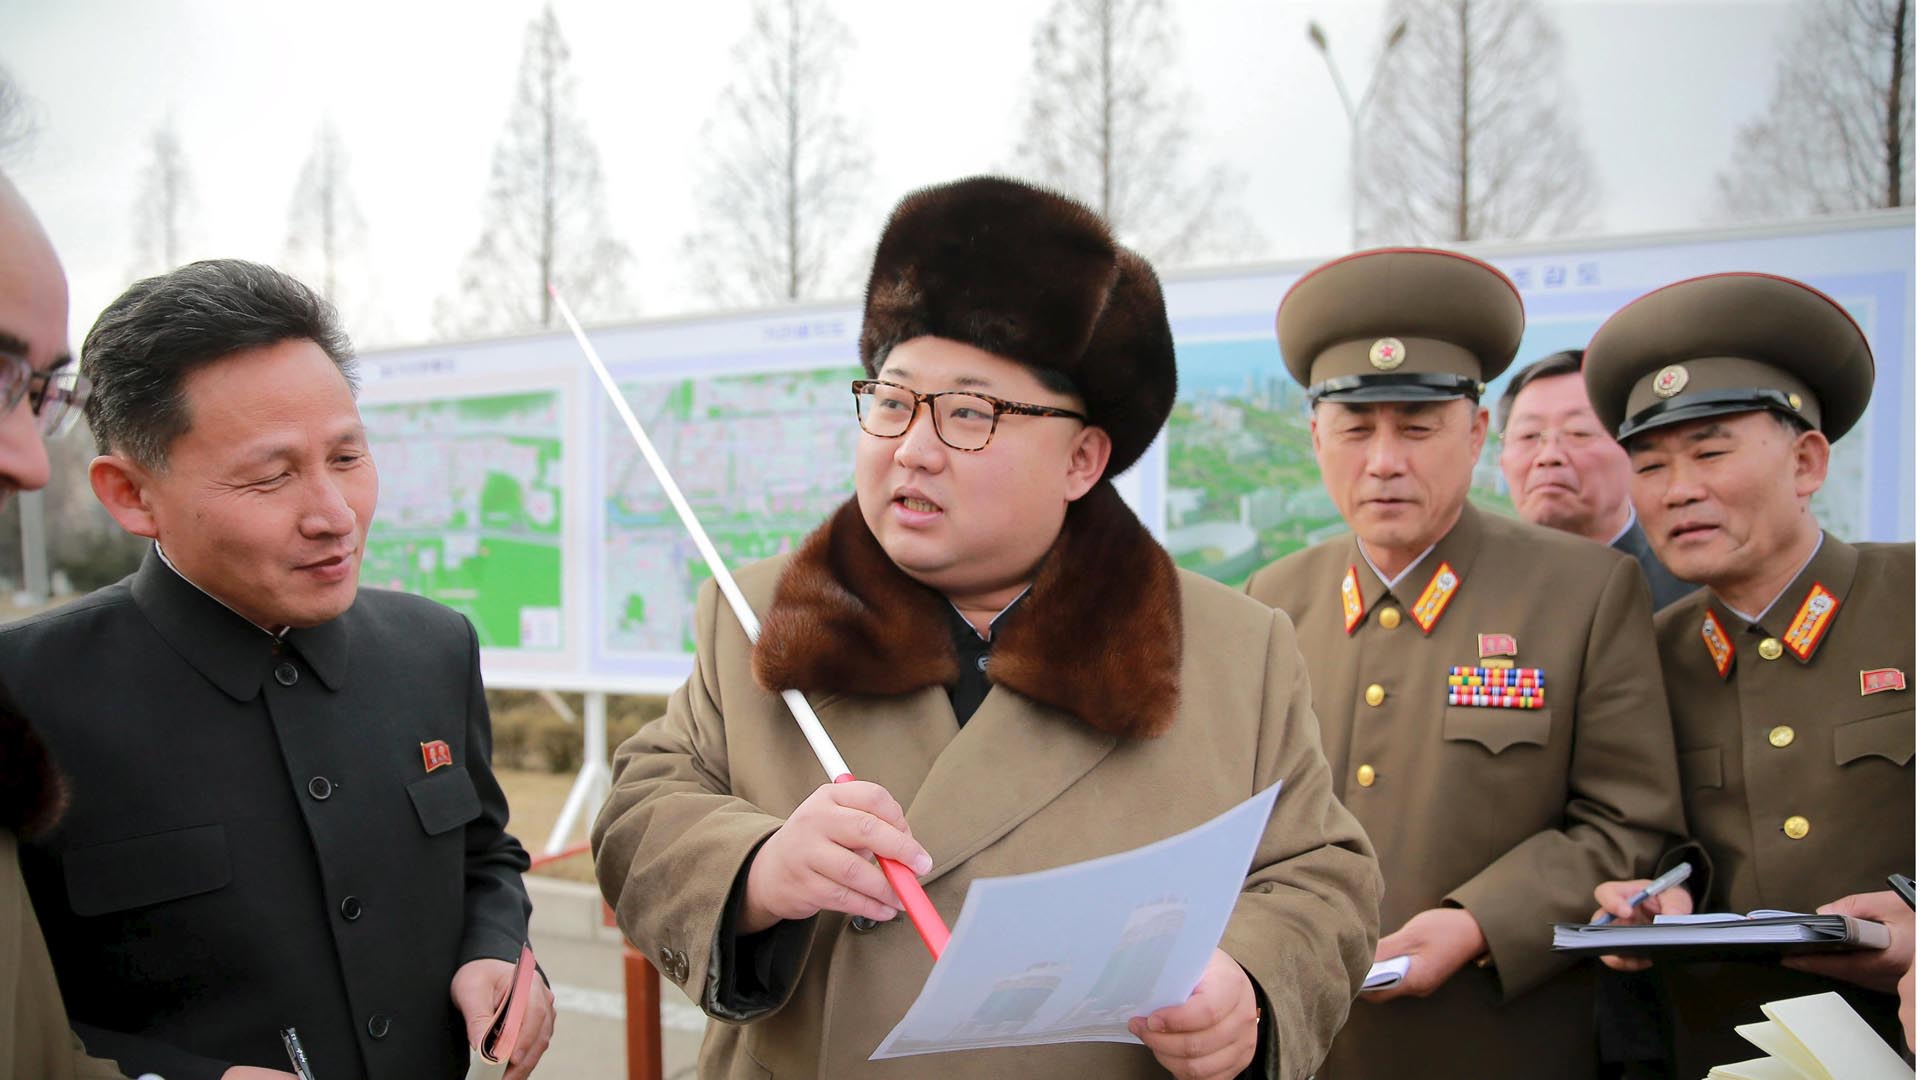 El régimen de Pyongyang violó las resoluciones del Consejo de Seguridad que le prohibía seguir trabajando con misiles balísticos